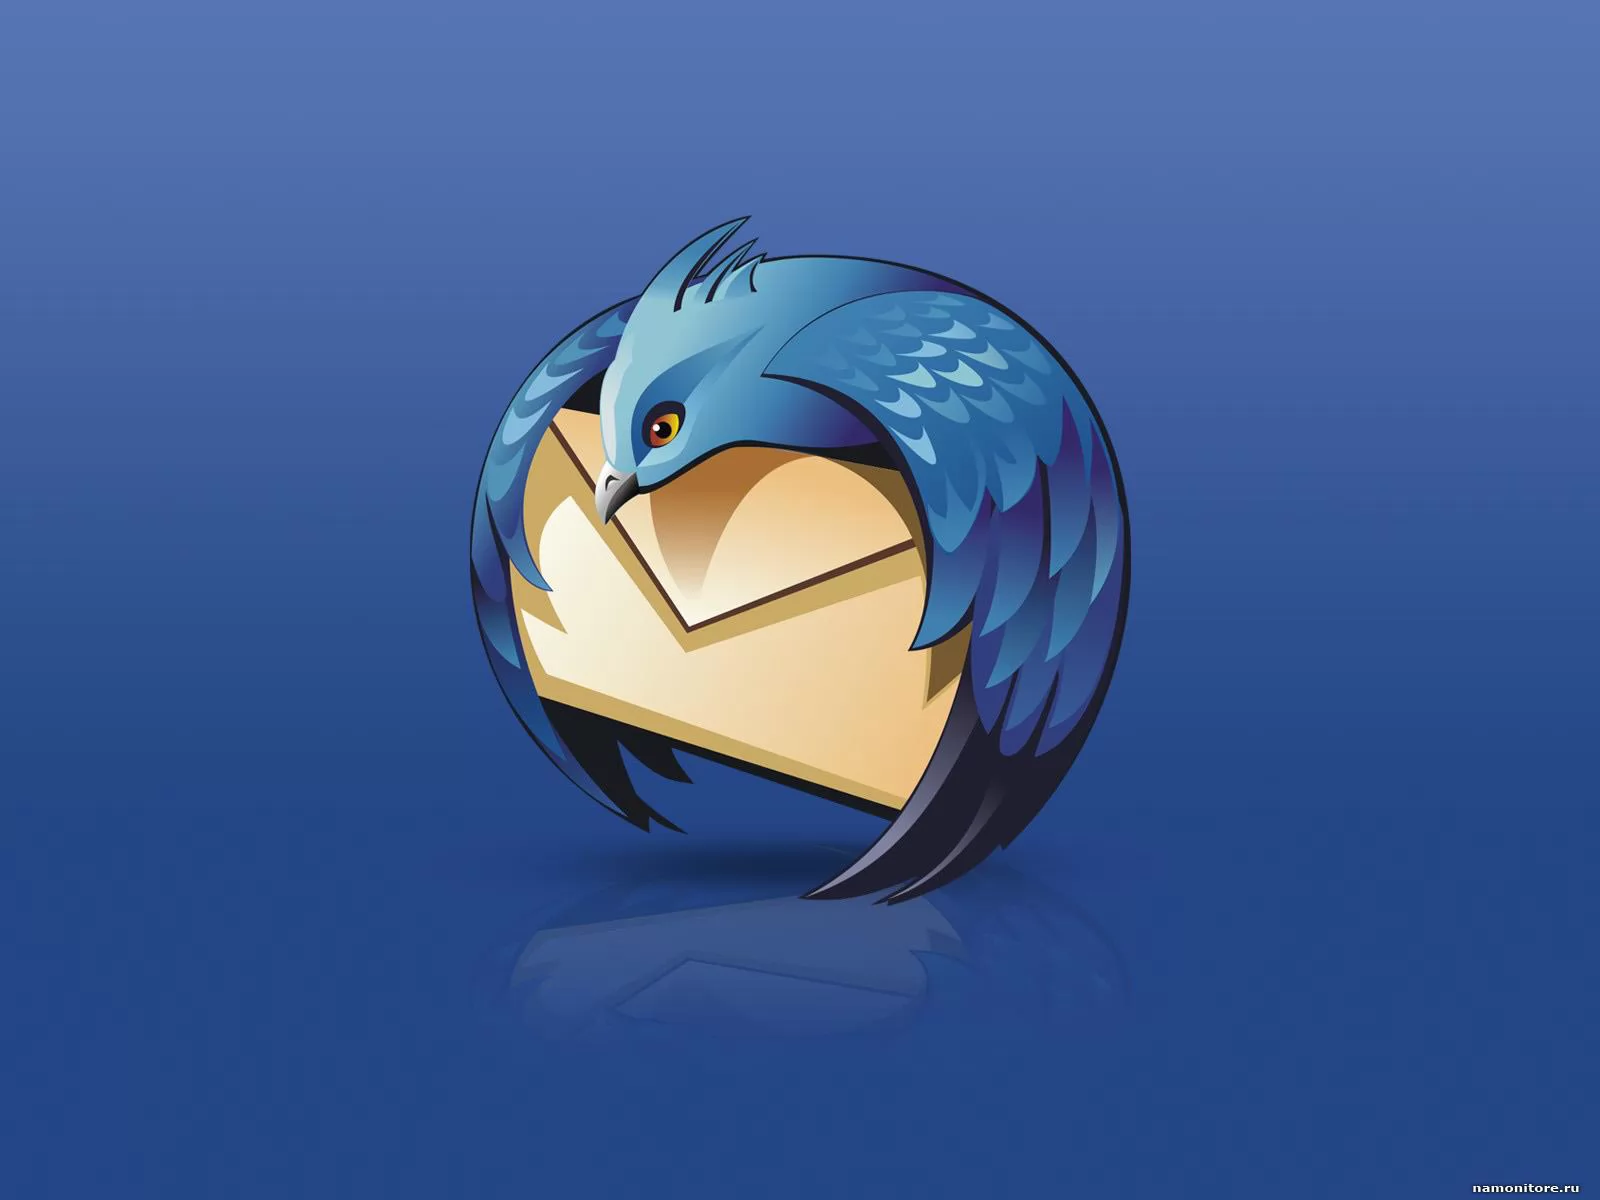 Mozilla Thunderbird, компьютеры и программы, рисованное, синее х